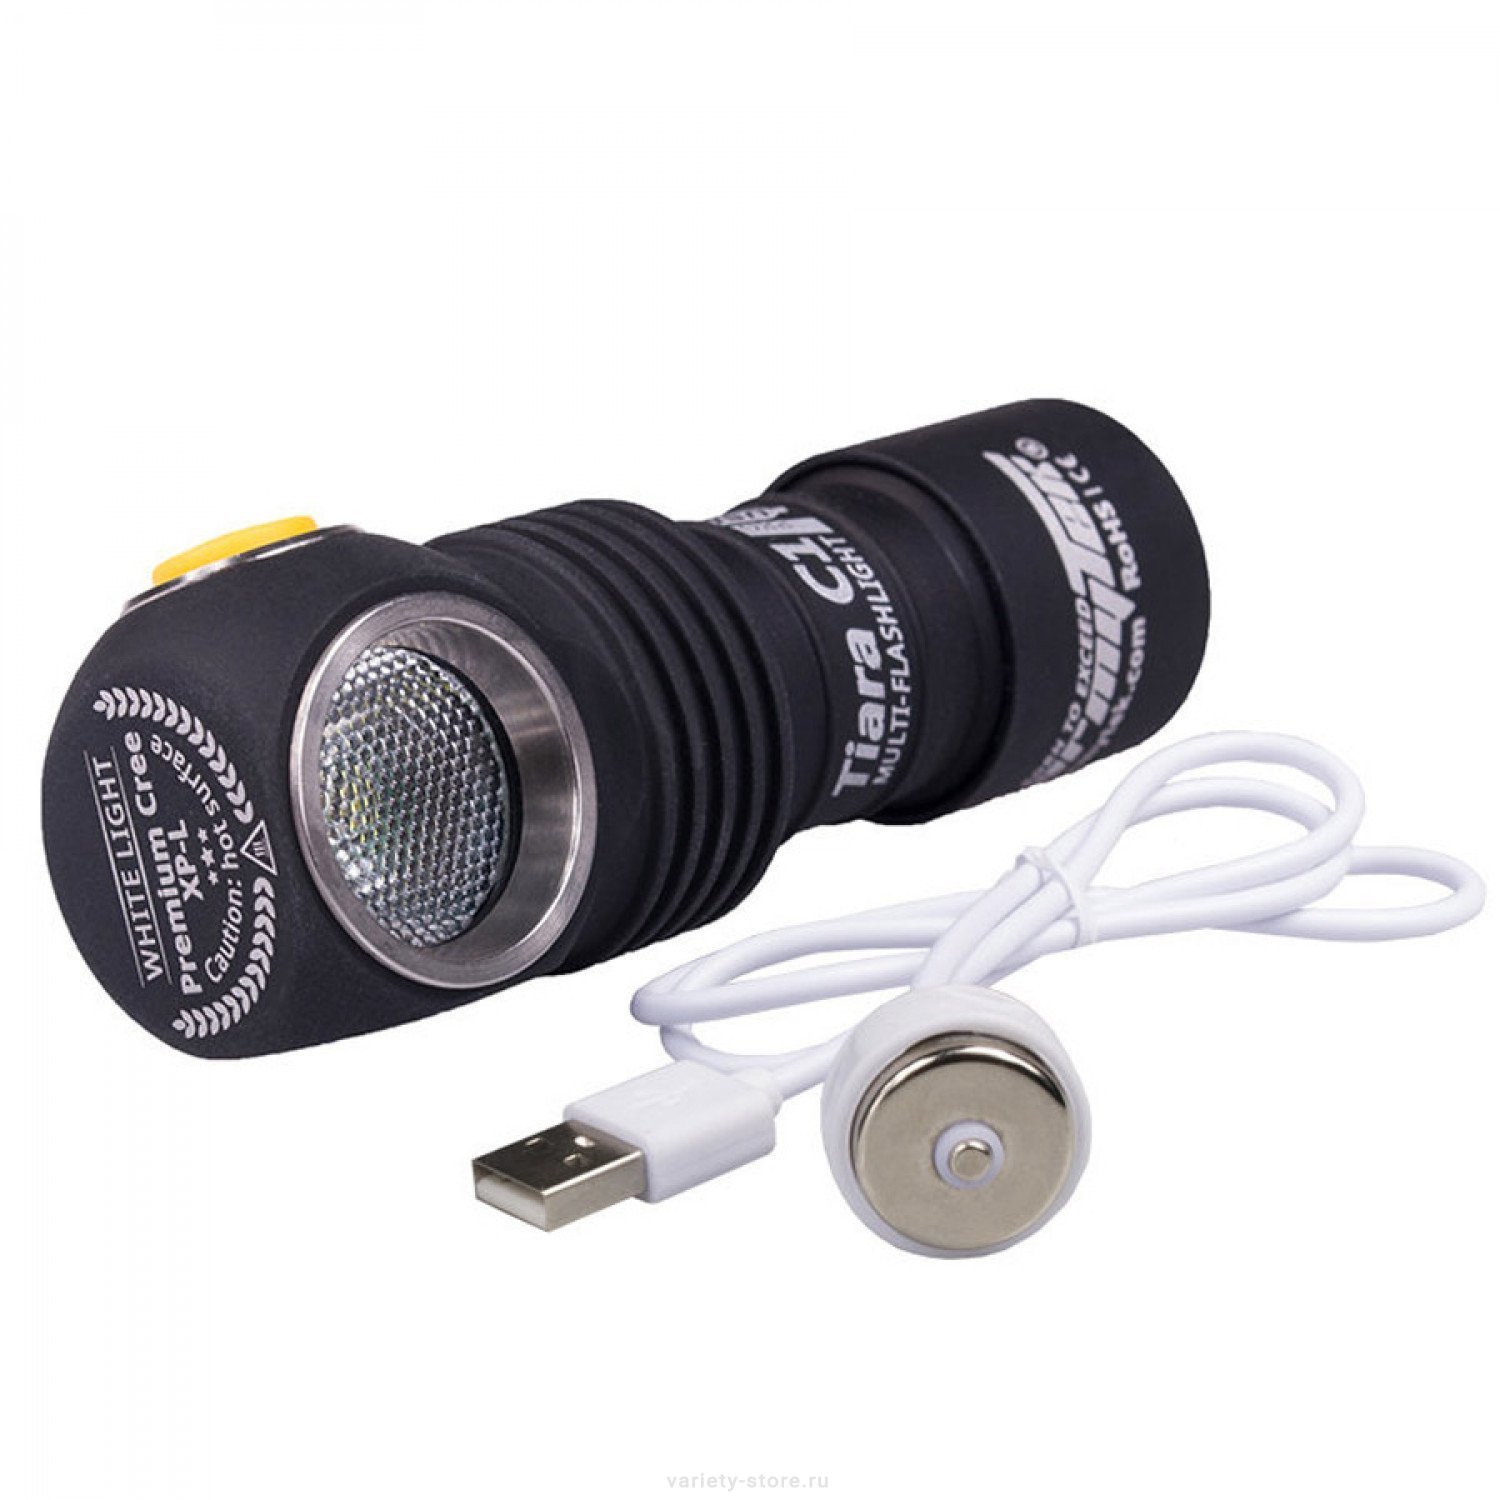 Мультифонарь светодиодный Armytek Tiara C1 Magnet USB+18350, 1050 лм - фото 3